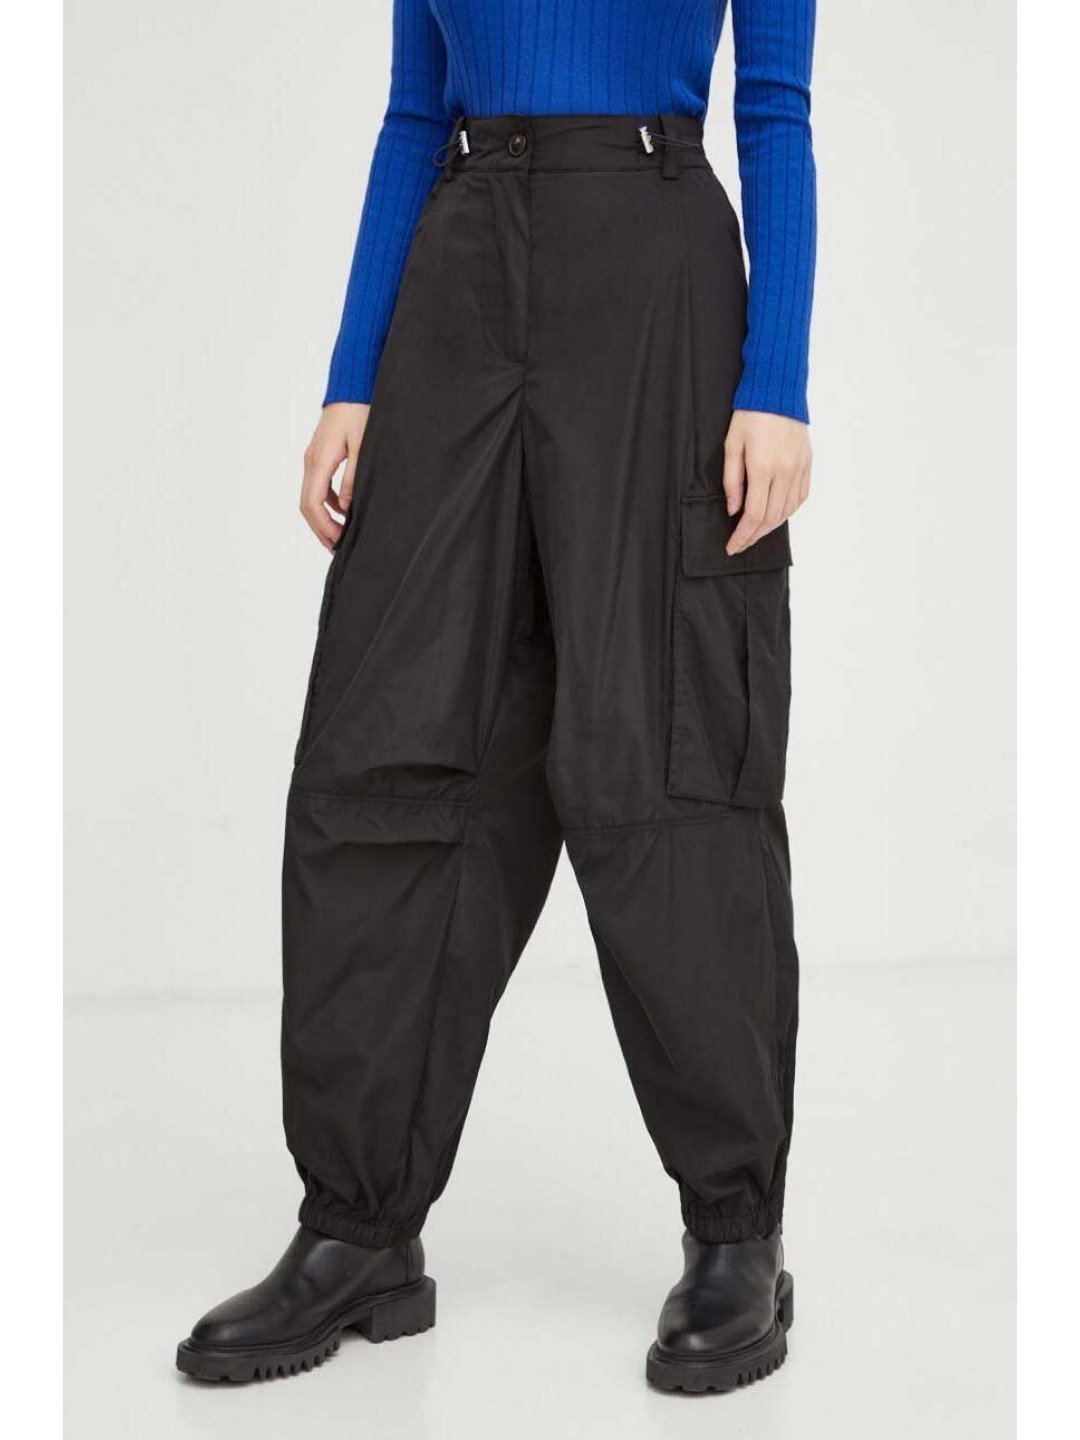 Kalhoty Herskind Edwin dámské černá barva kapsáče high waist